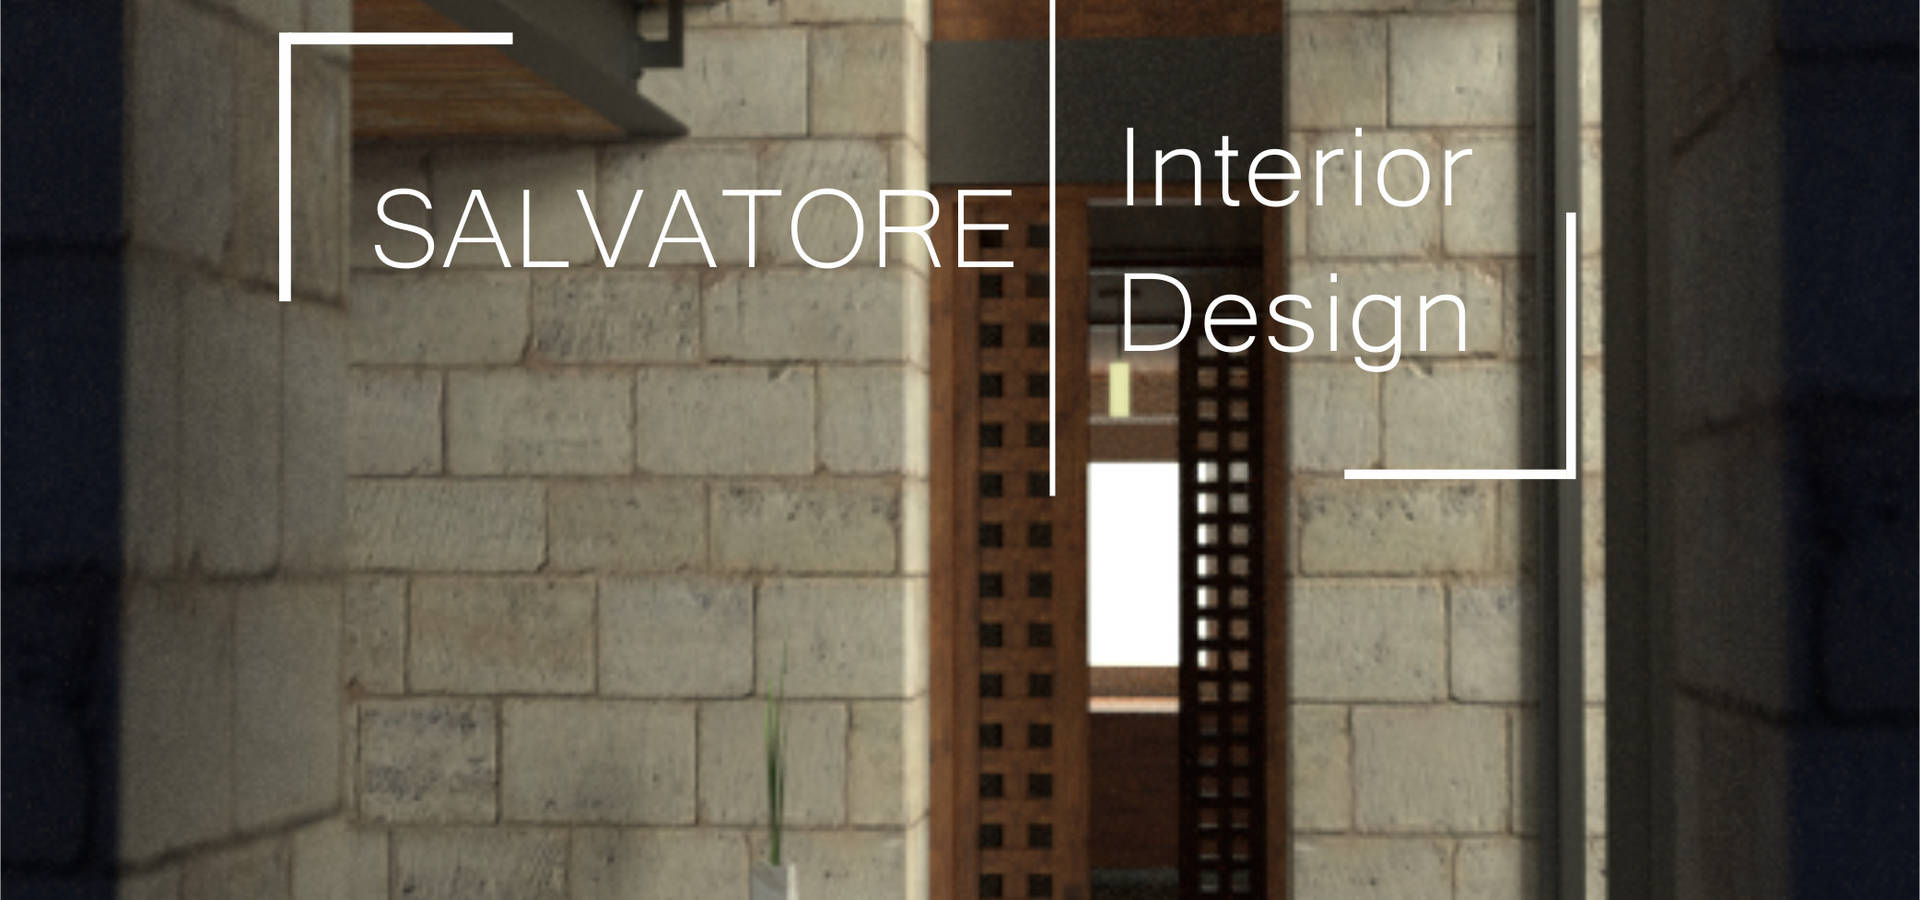 Salvatore Interior Design